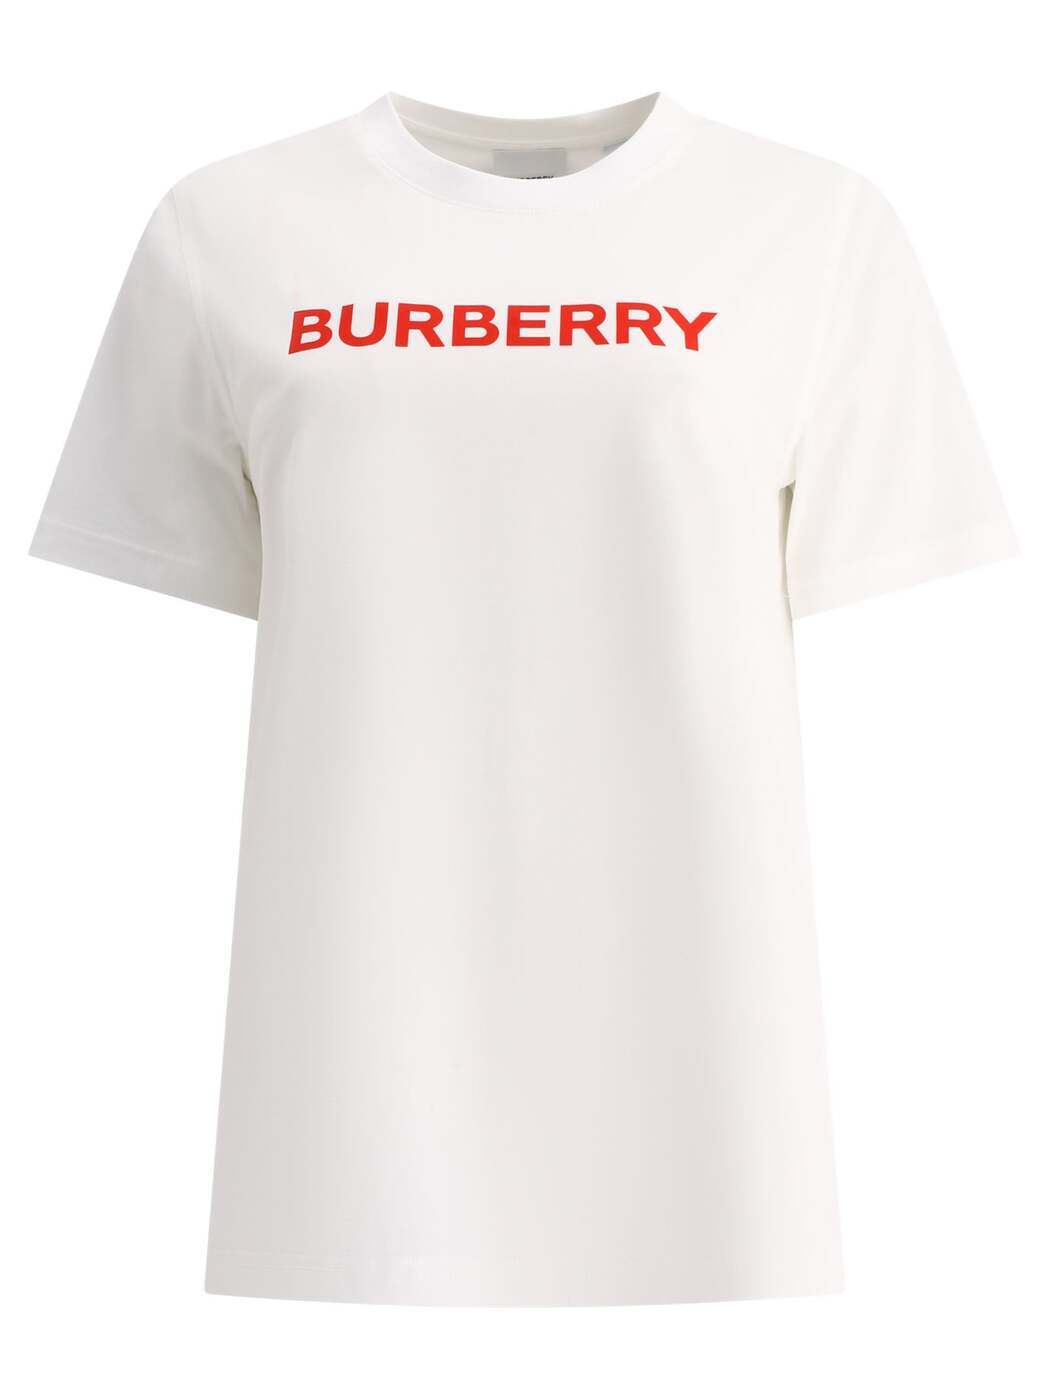 BURBERRY バーバリー ホワイト White Tシャツ レディース 7948543361173 【関税・送料無料】【ラッピング無料】 ba